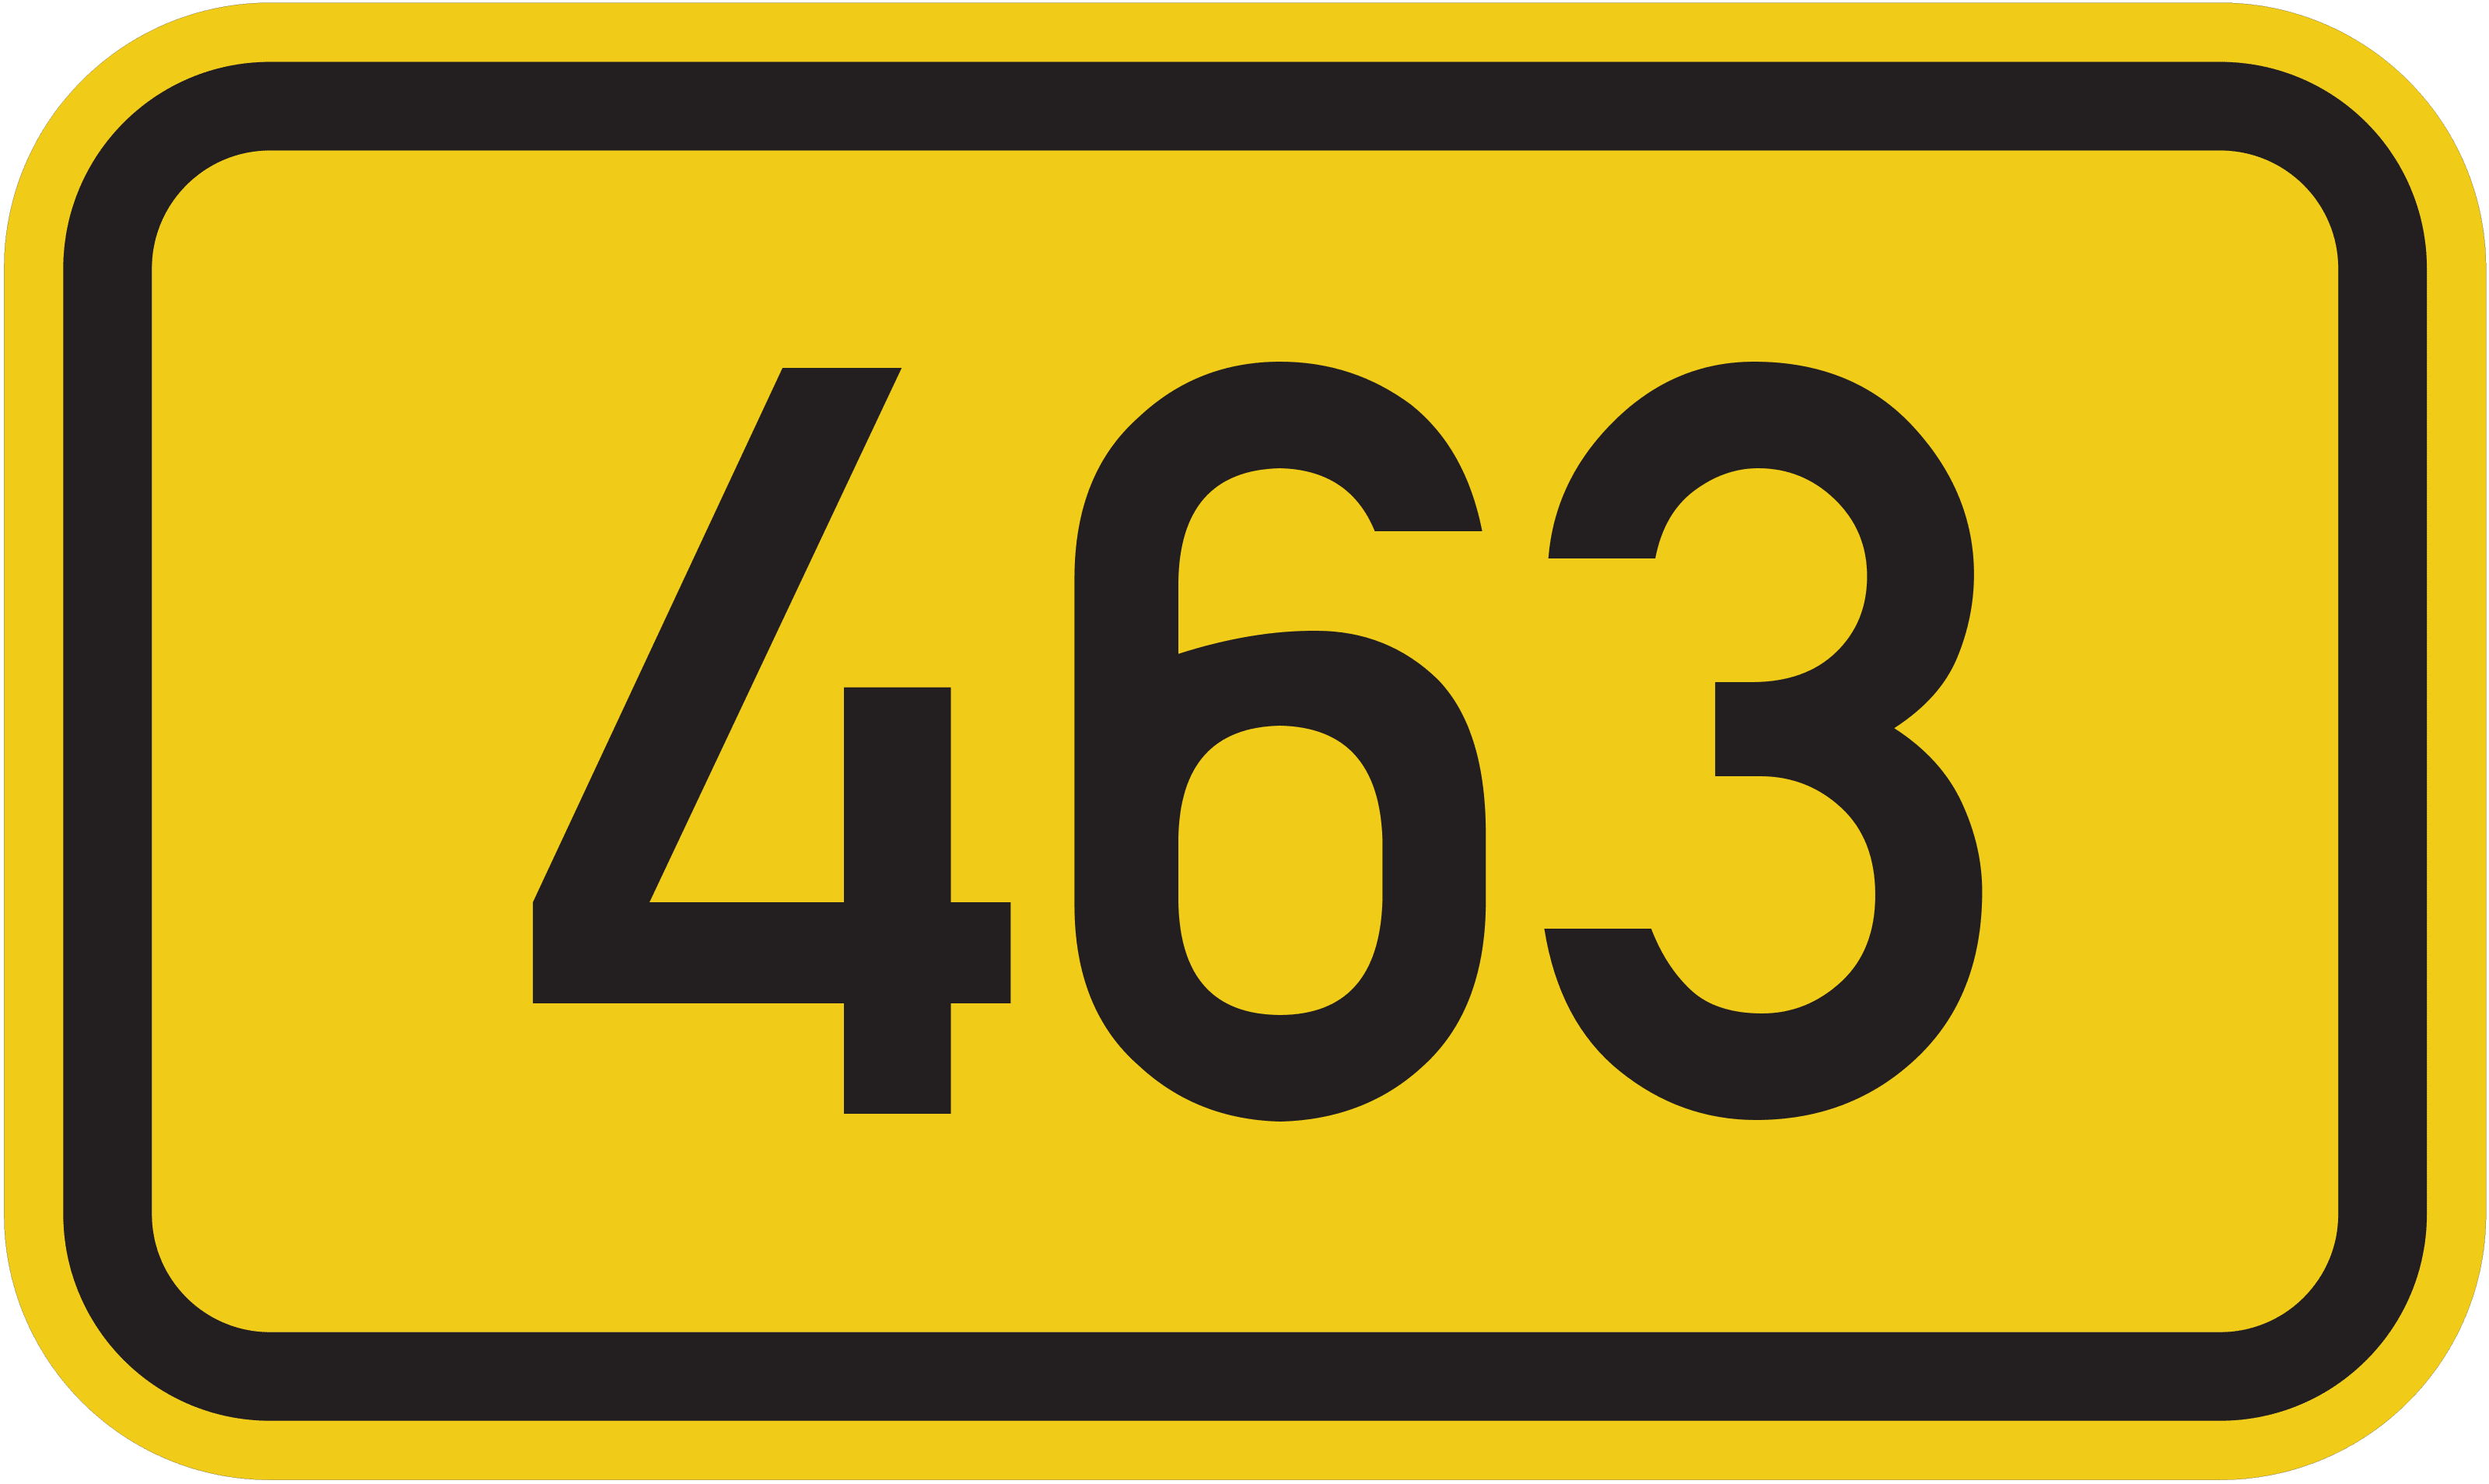 Bundesstraße B 463